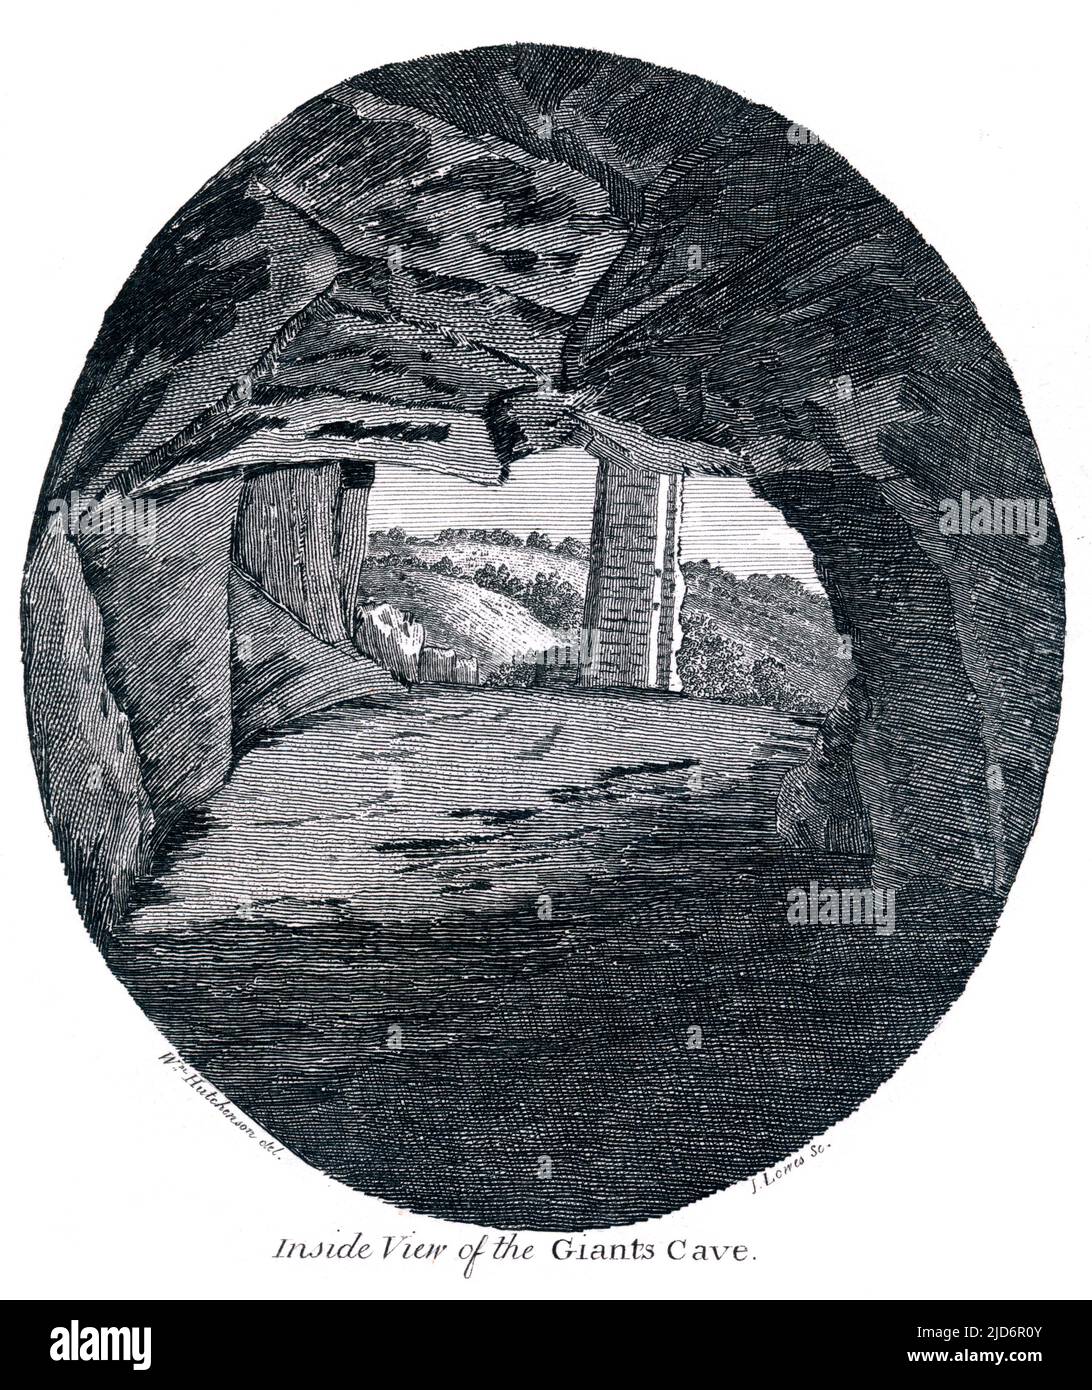 Vista interior de la Cueva del Gigante, Cumbria, grabada por James Lowes de Carlisle, 1790 Foto de stock